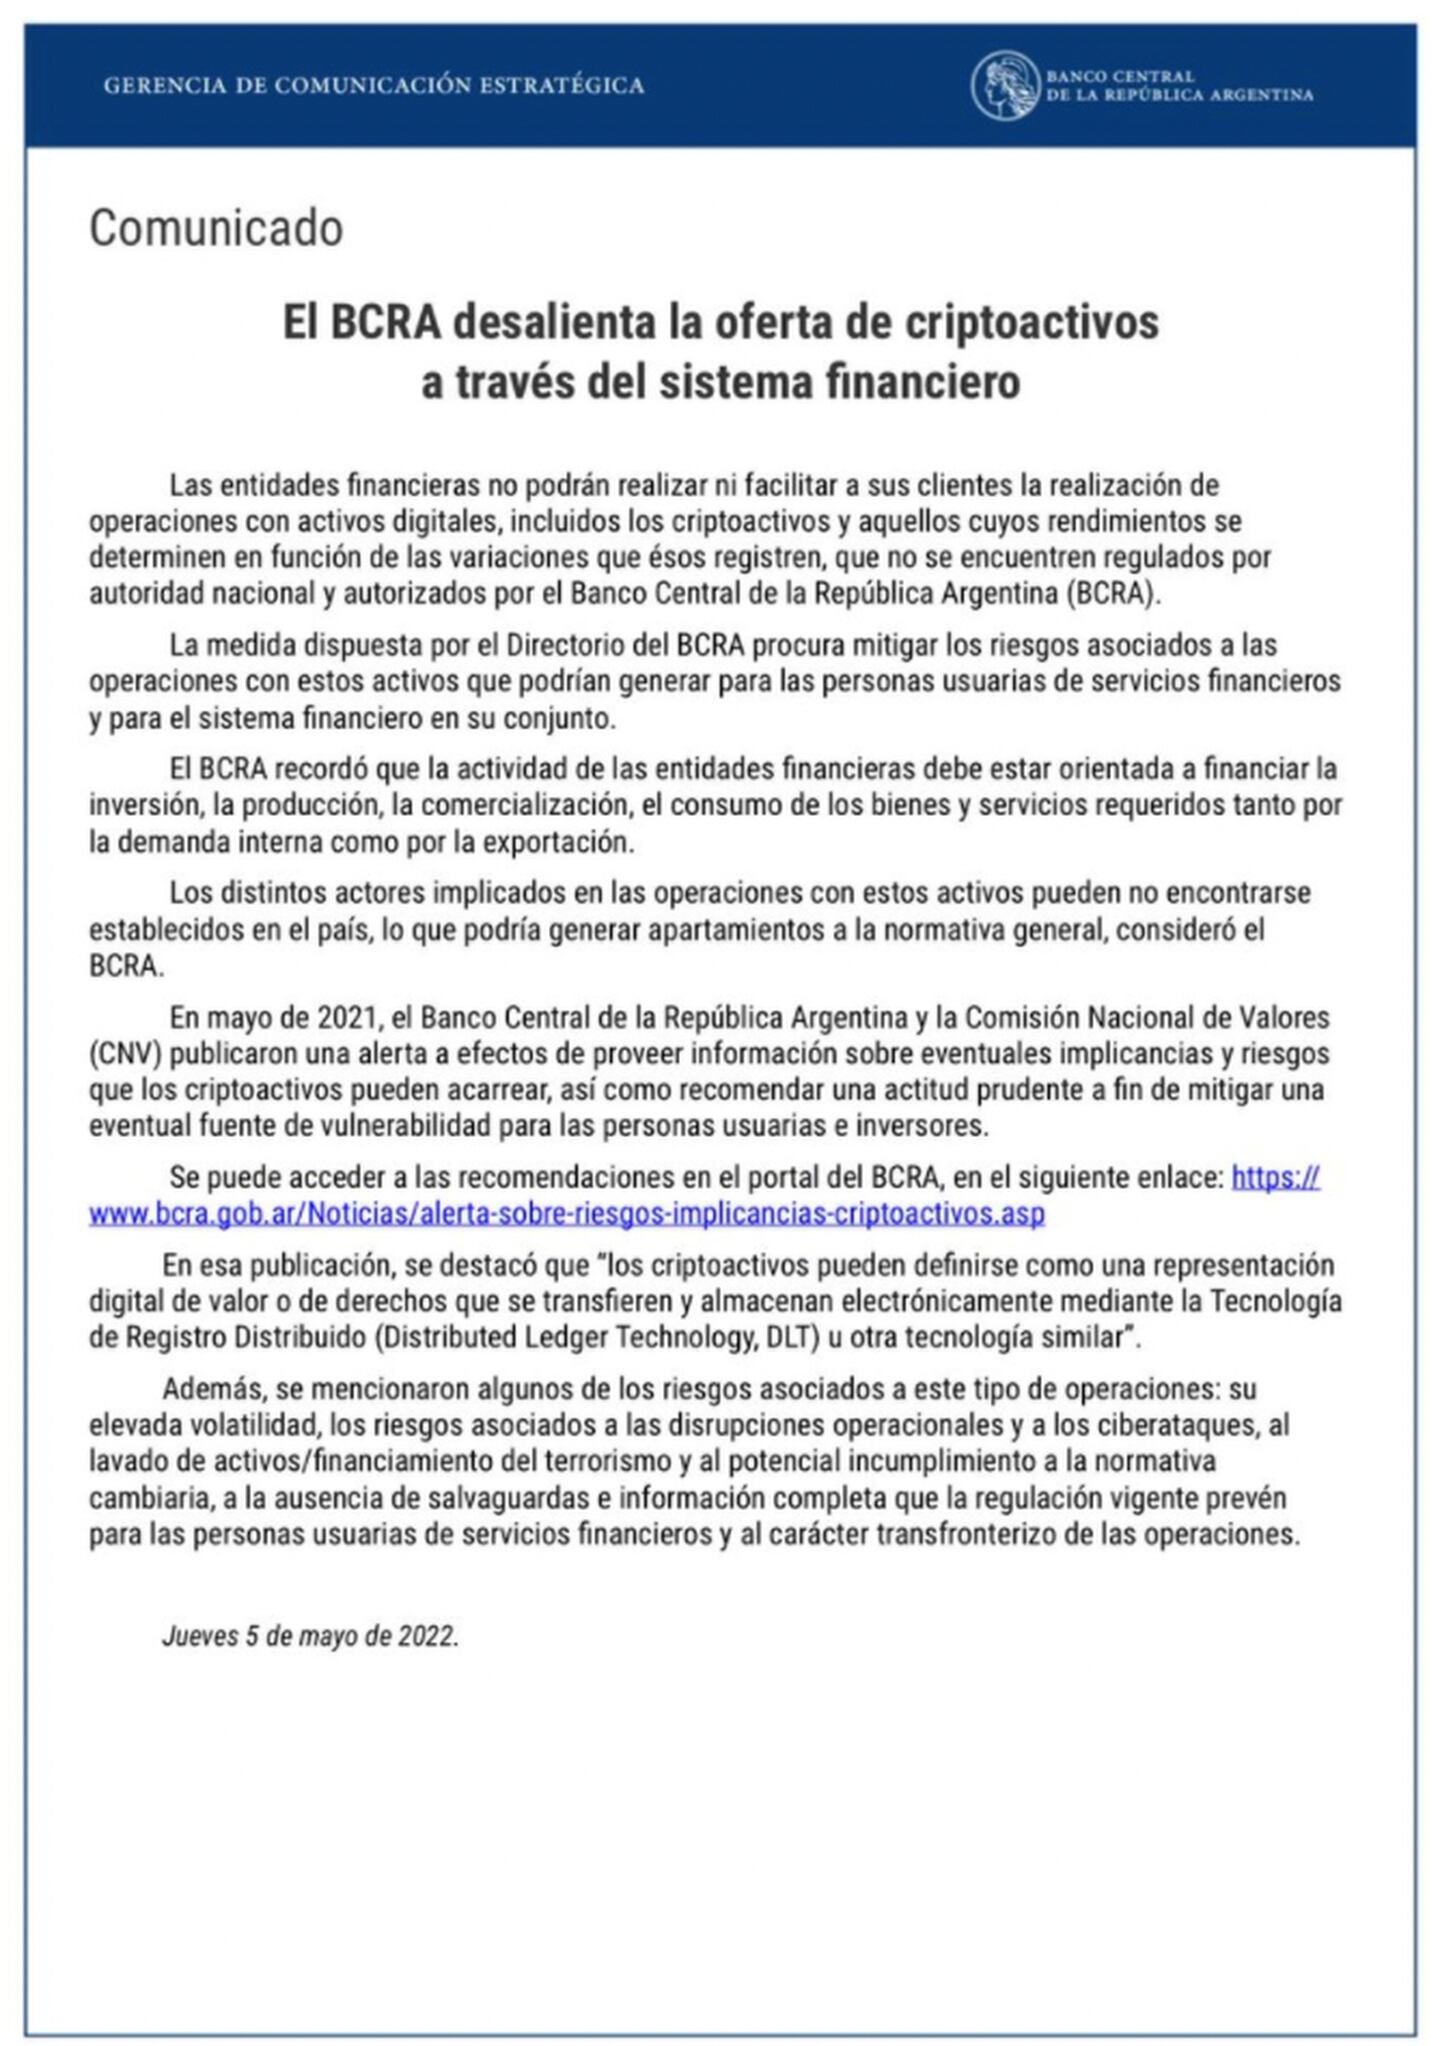 Comunicado do BCRA que proibiu operações com criptomoedas por bancos argentinos.dfd